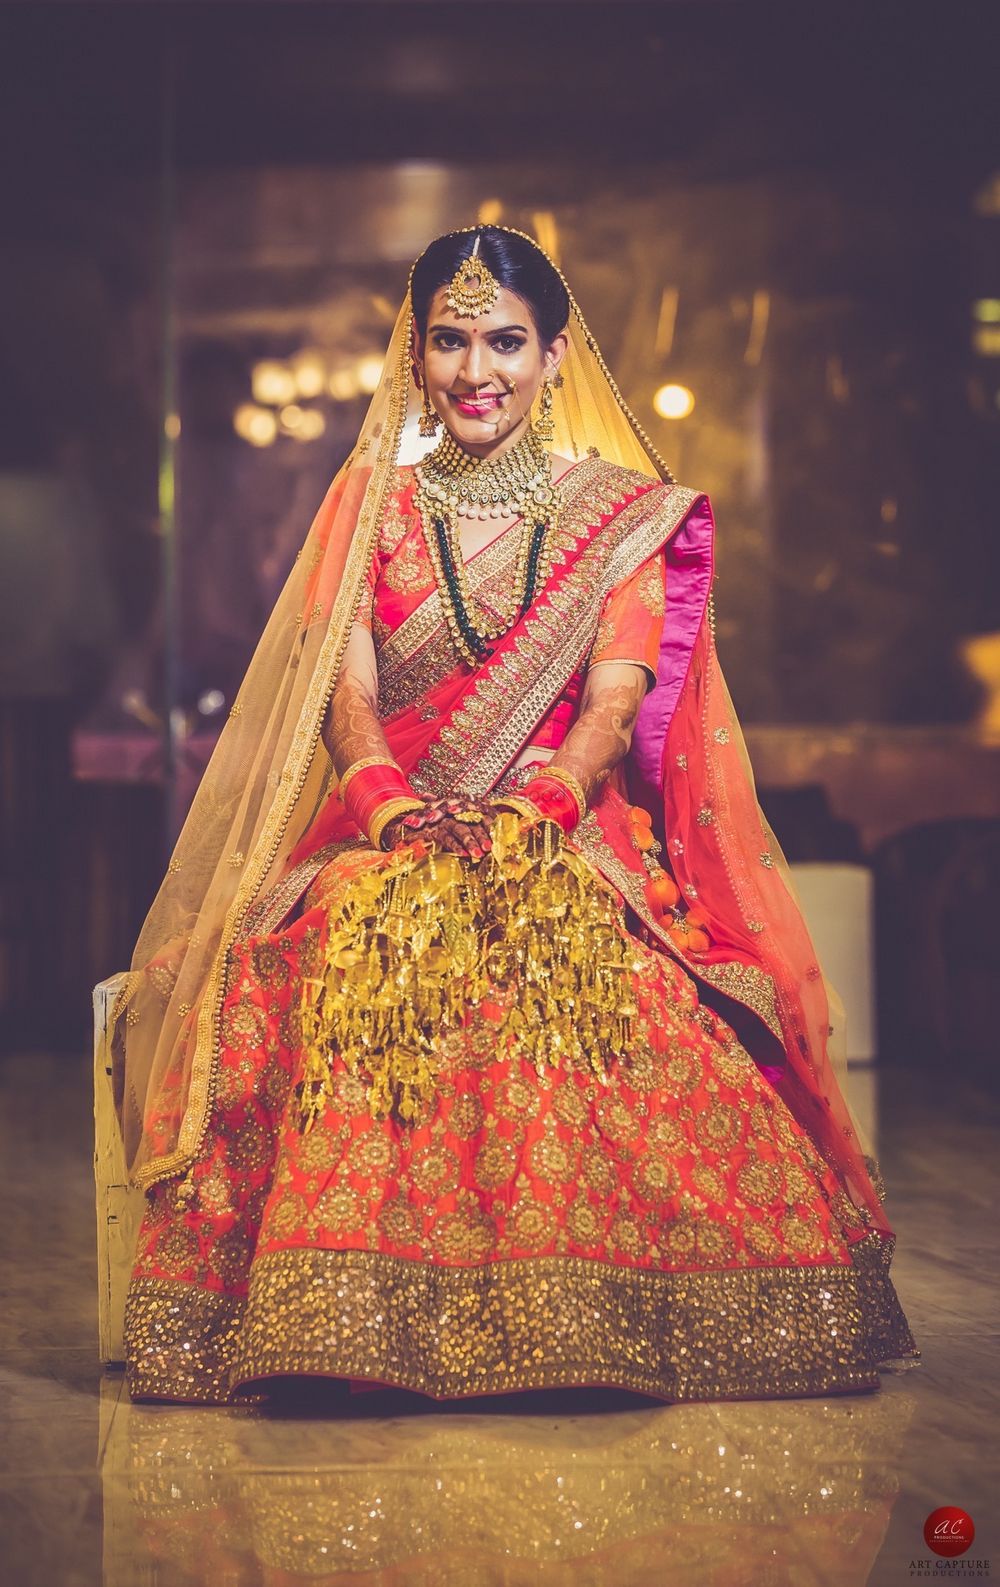 Photo of Orange and gold bridal lehenga with pink dupatta